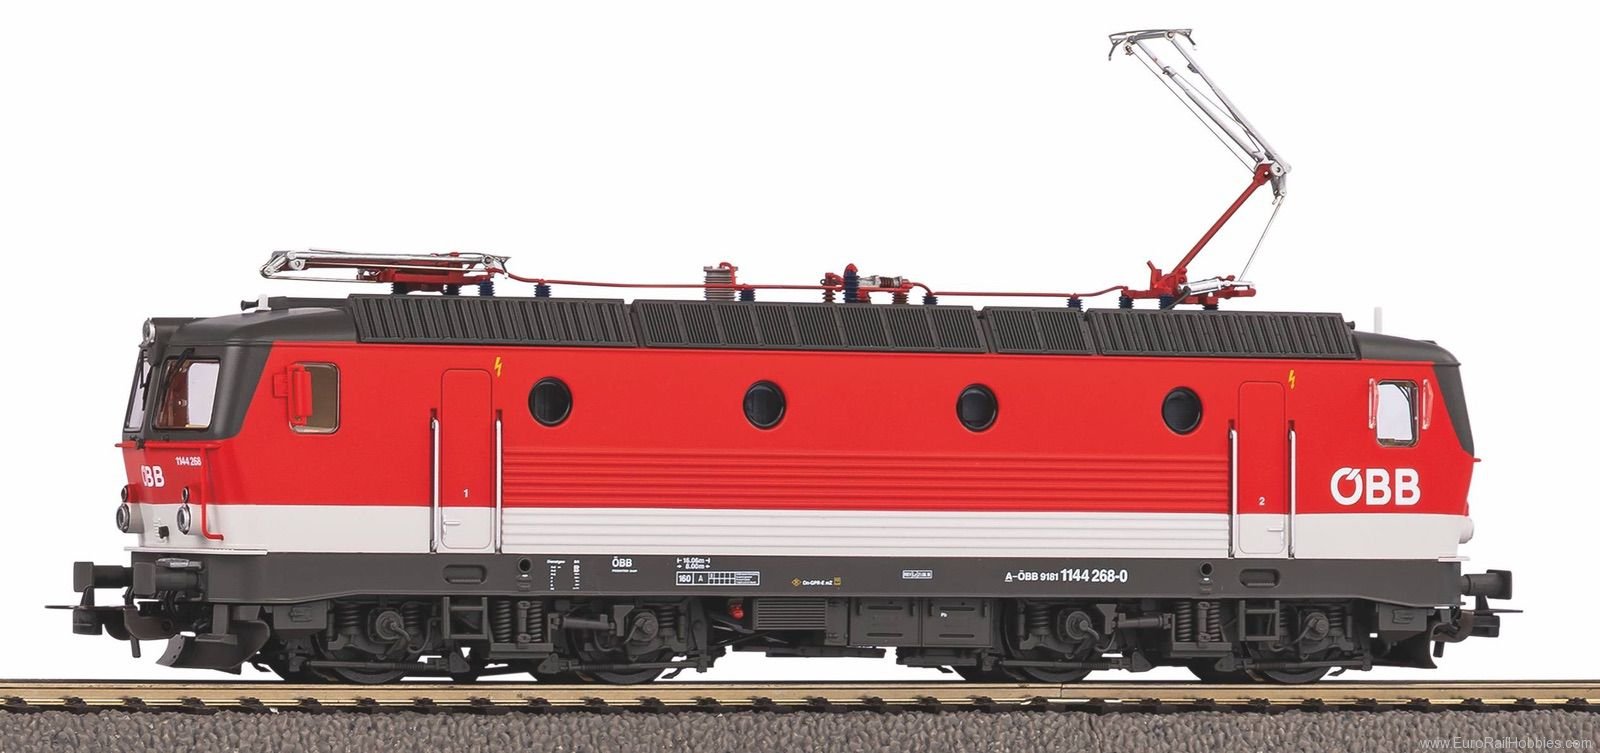 Piko 51633 Electric Locomotive Rh 1144.2 OBB VI (Marklin